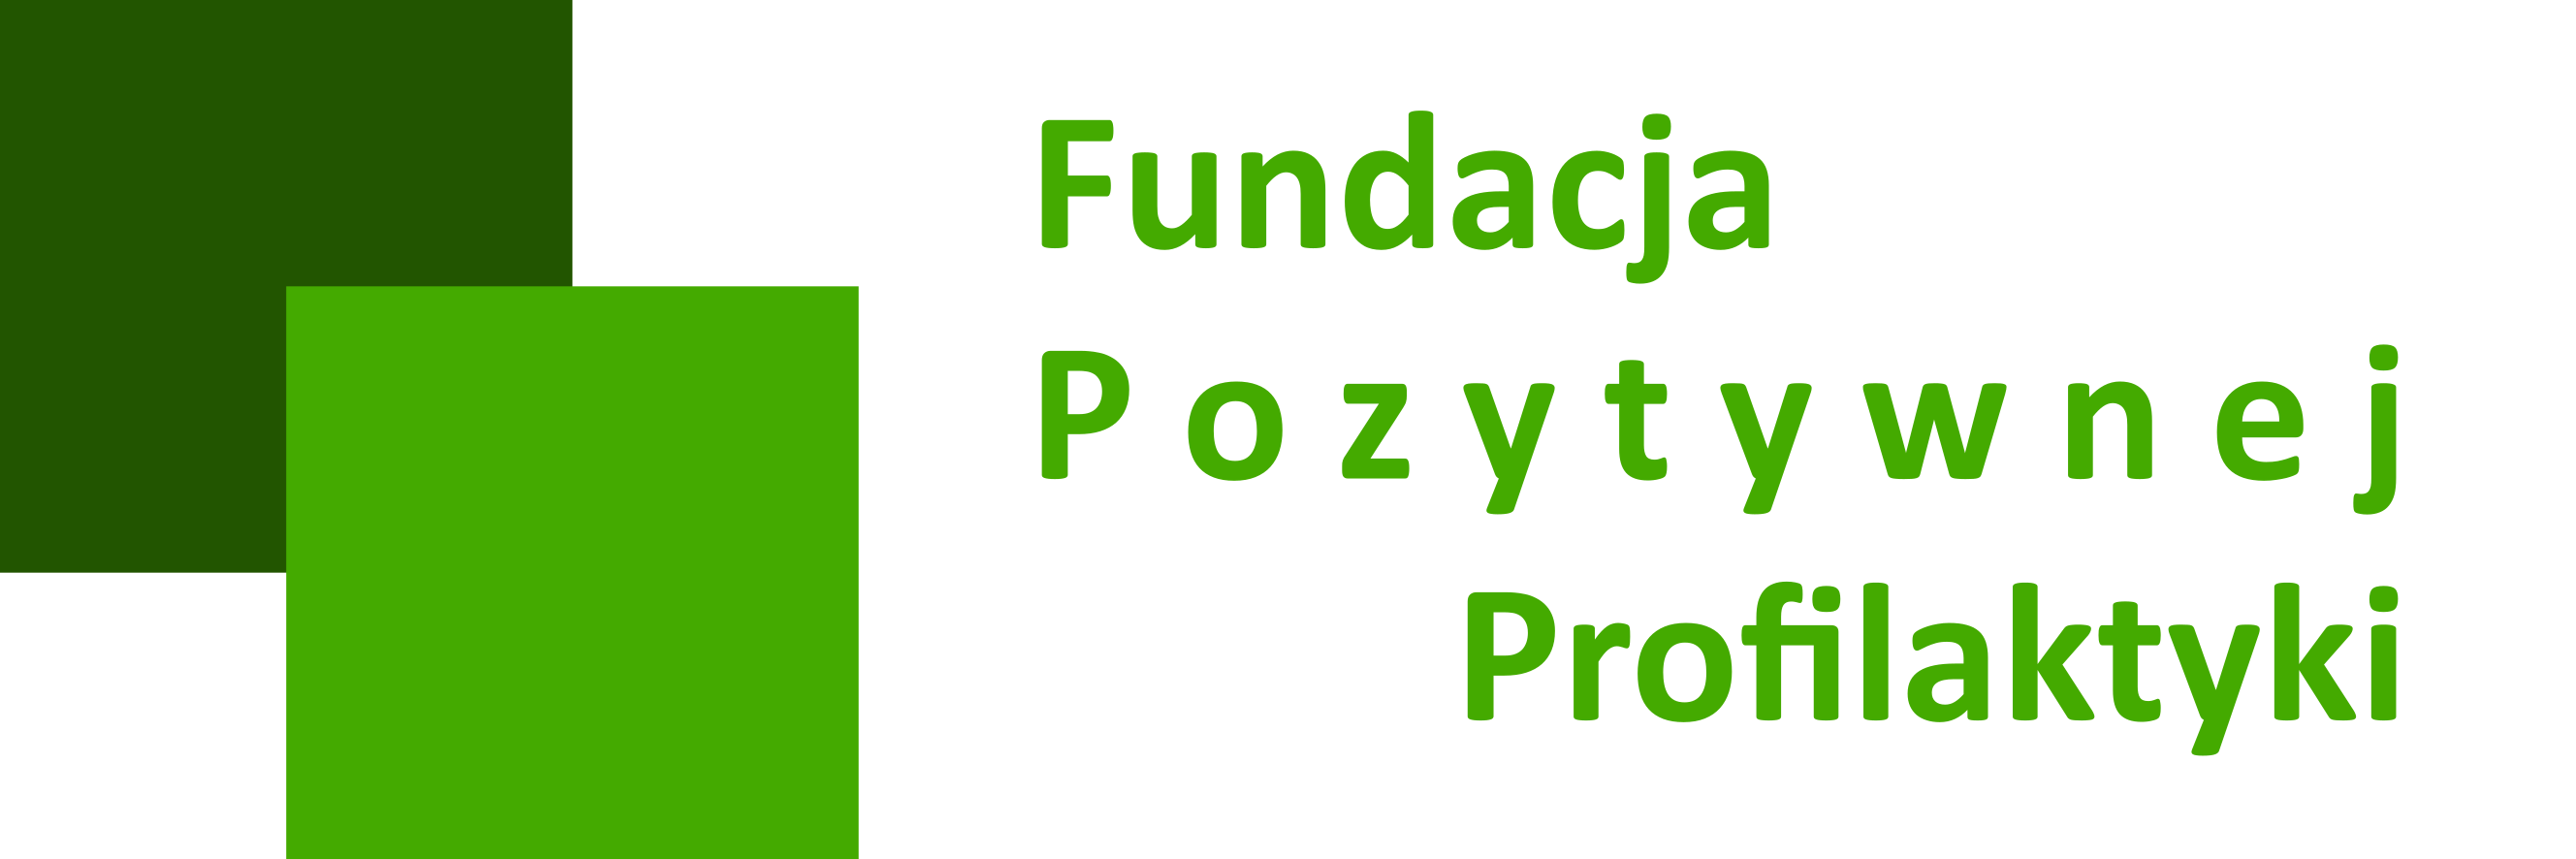 Fundacja Pozytywnej Profilaktyki